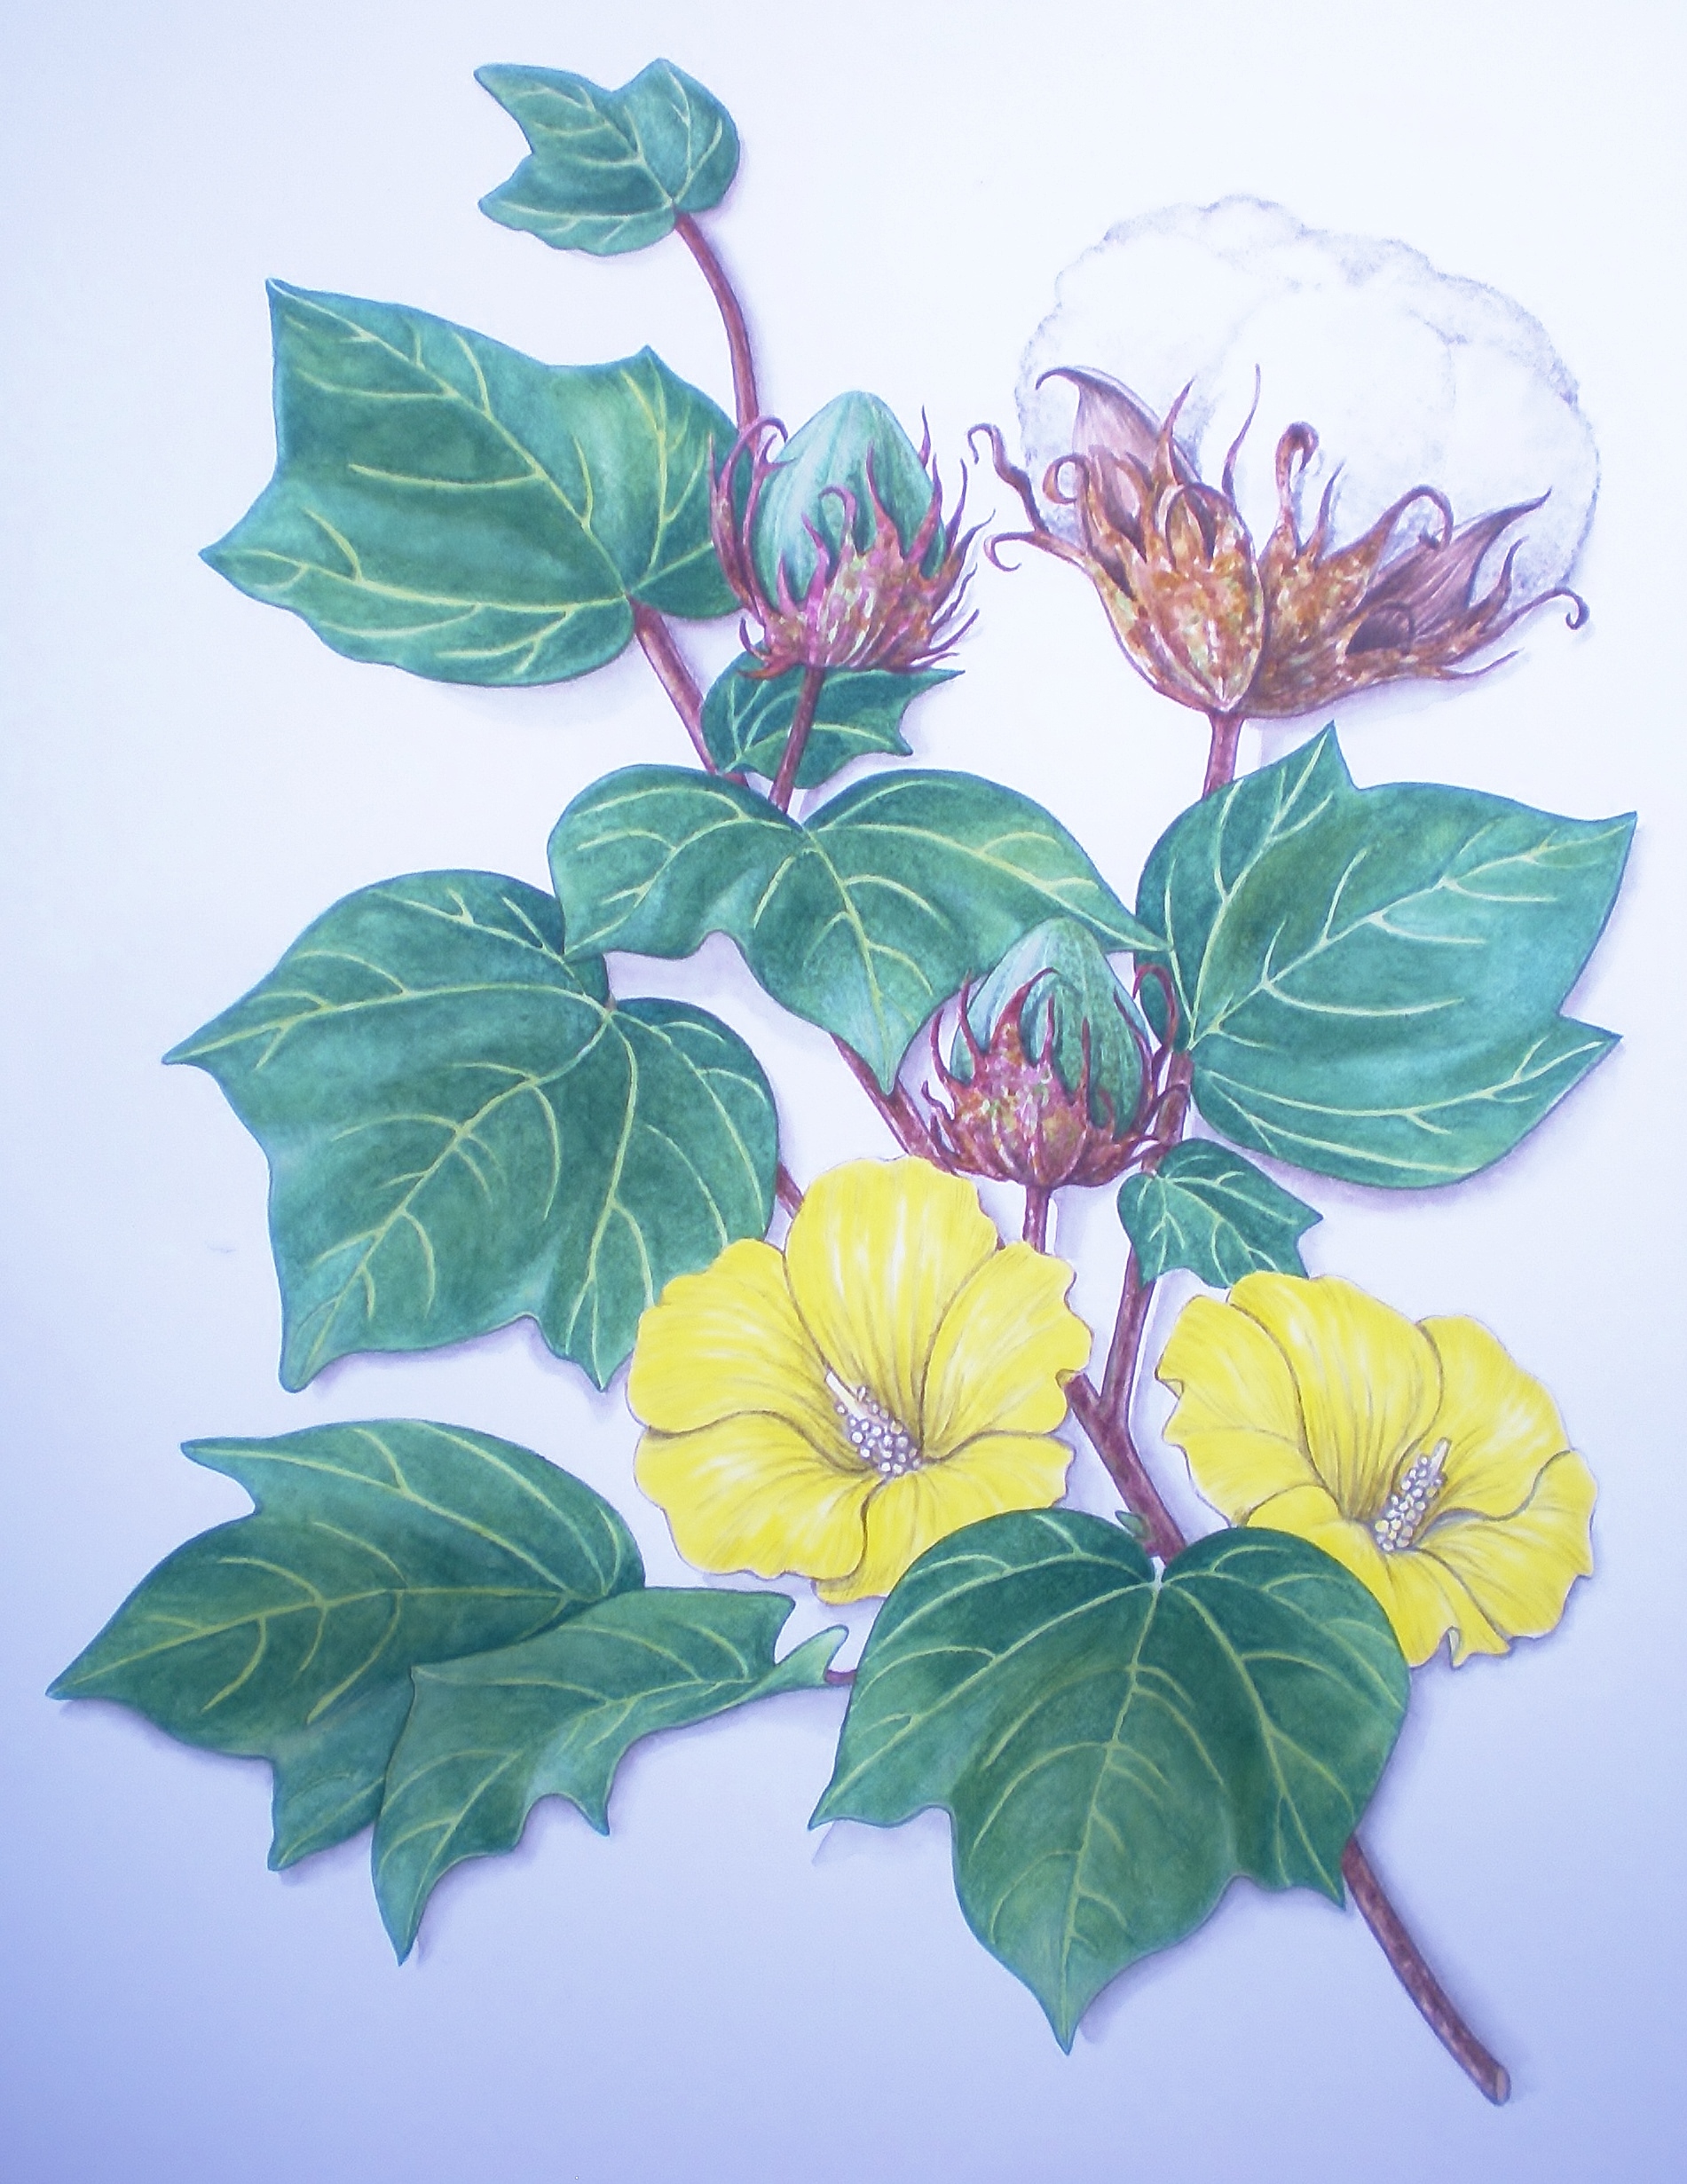 Cotton Plant Gossipium hirsutum Botanical Drawing Linda Greigg $400, Art Exhibit at Brookside Gardens